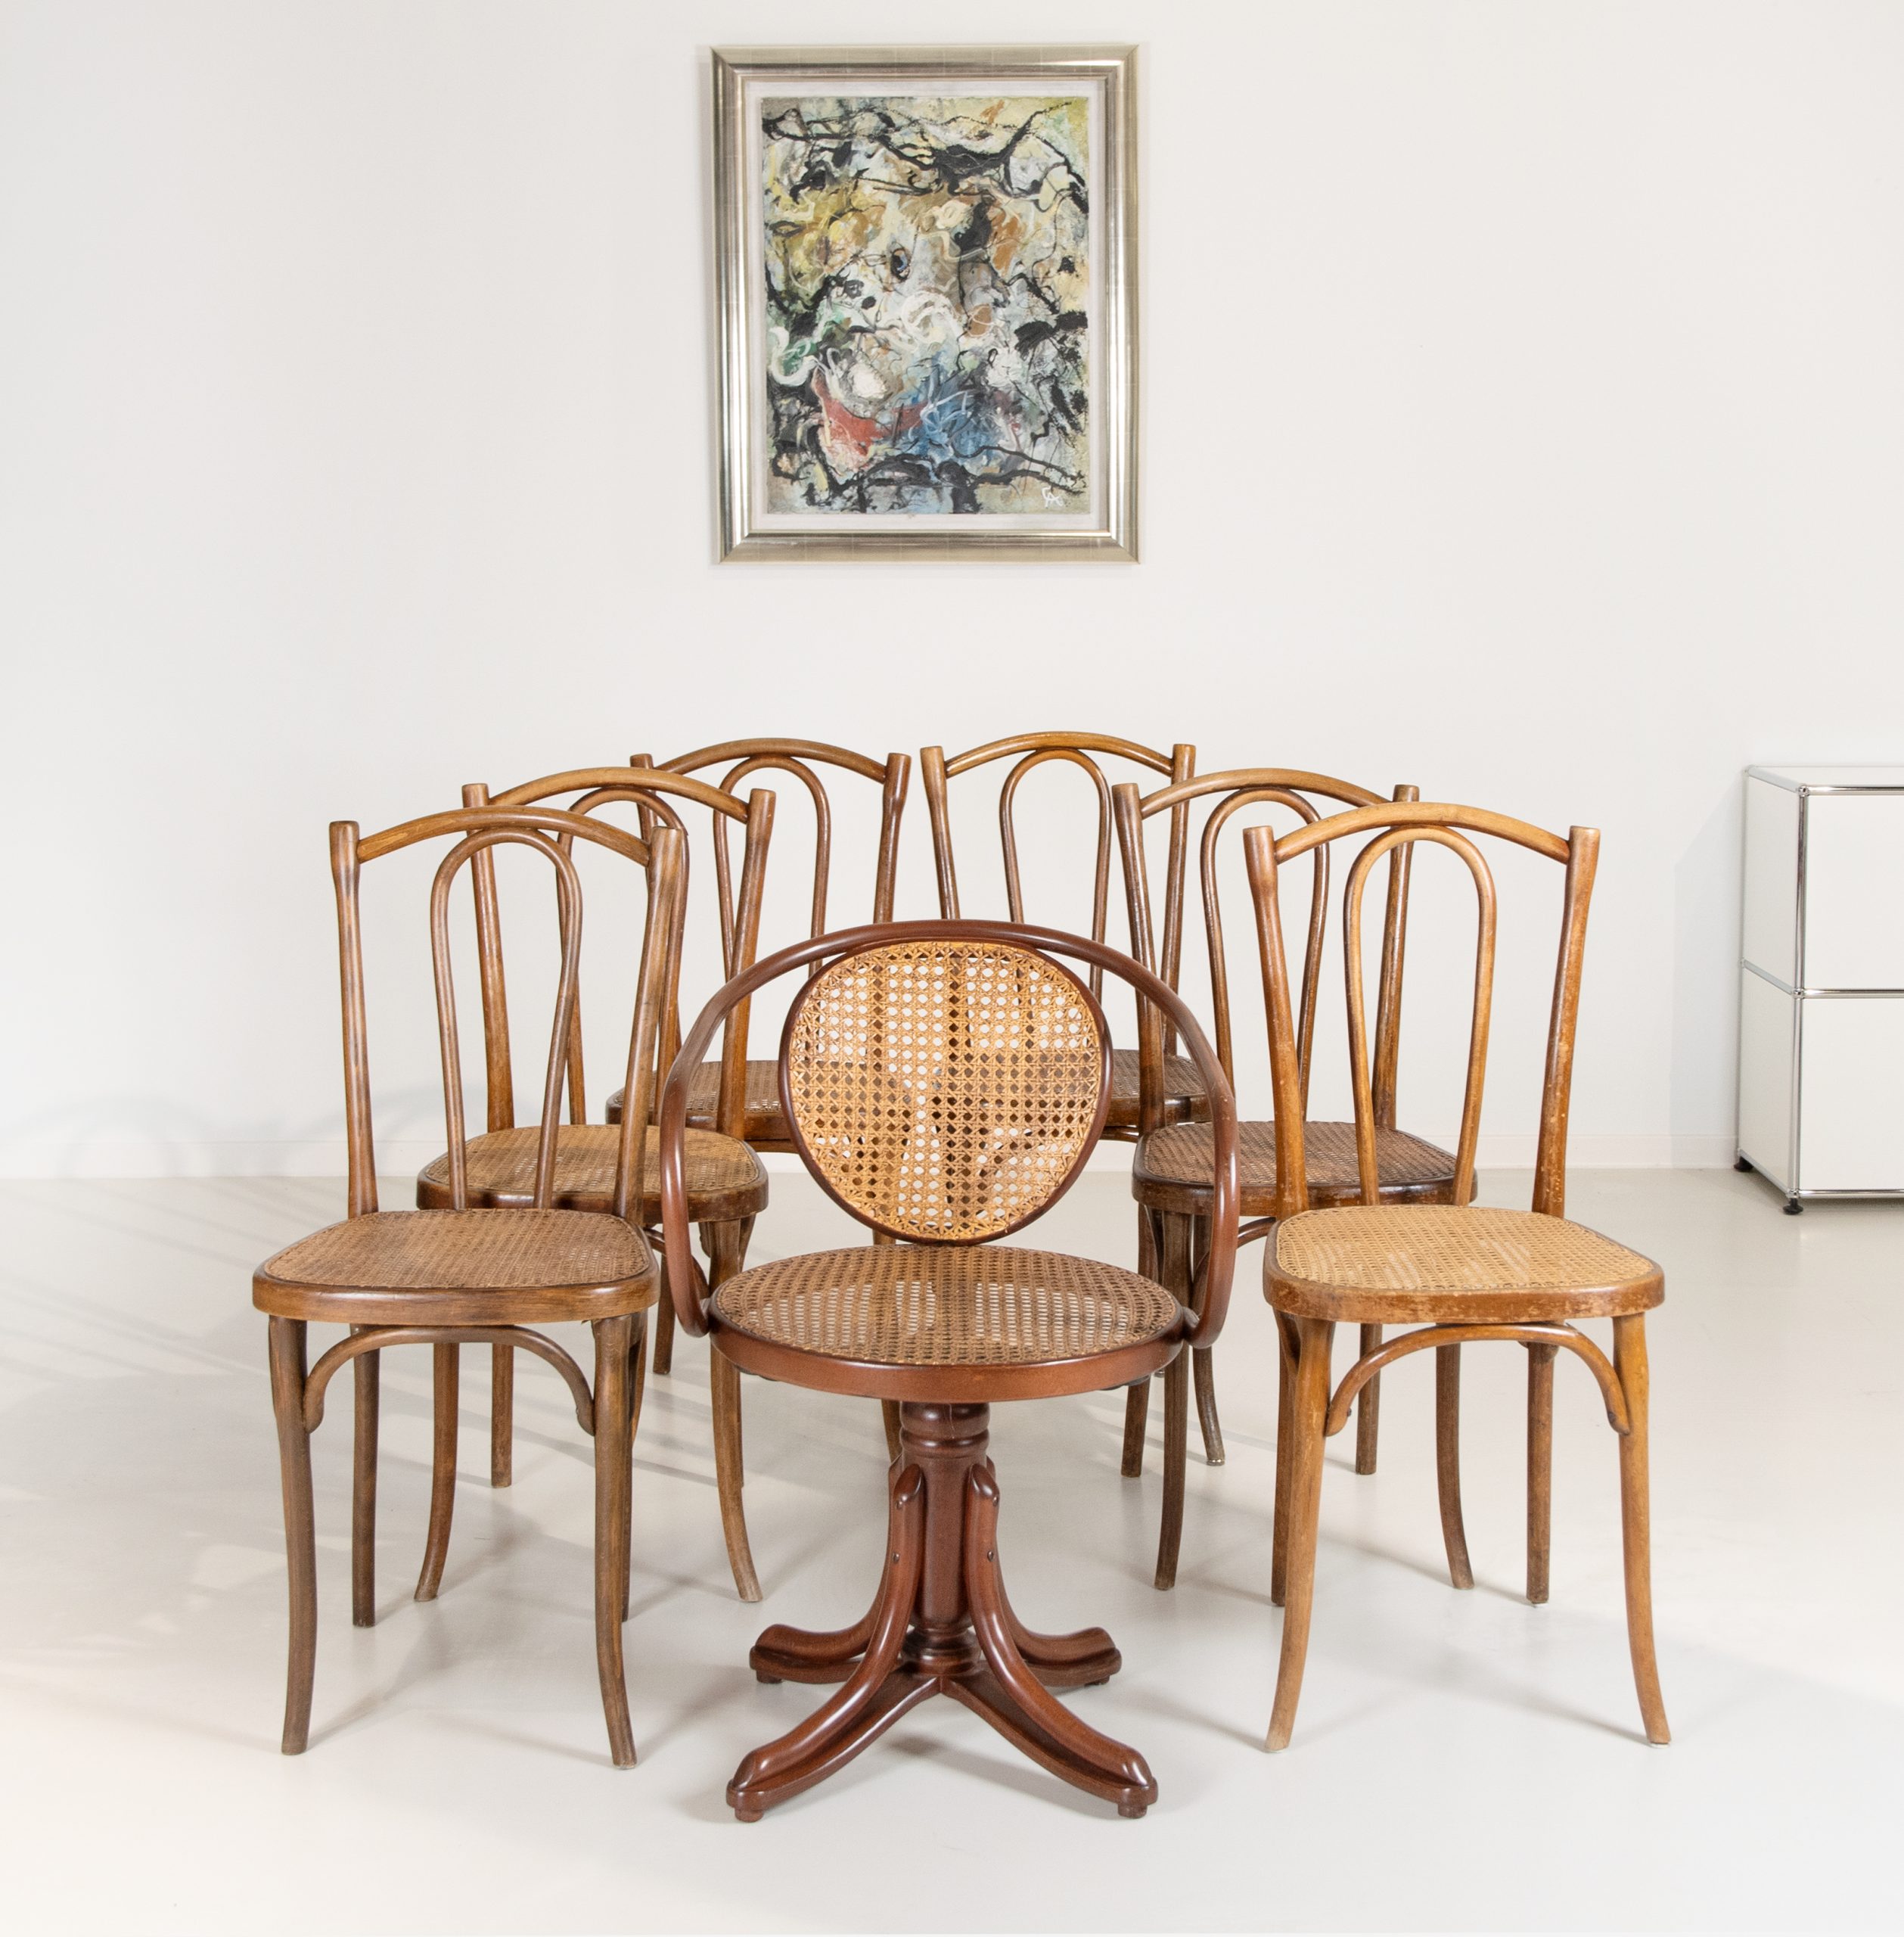 Sieben Stühle von Thonet - WETTMANN Kunstauktionen | Stühle